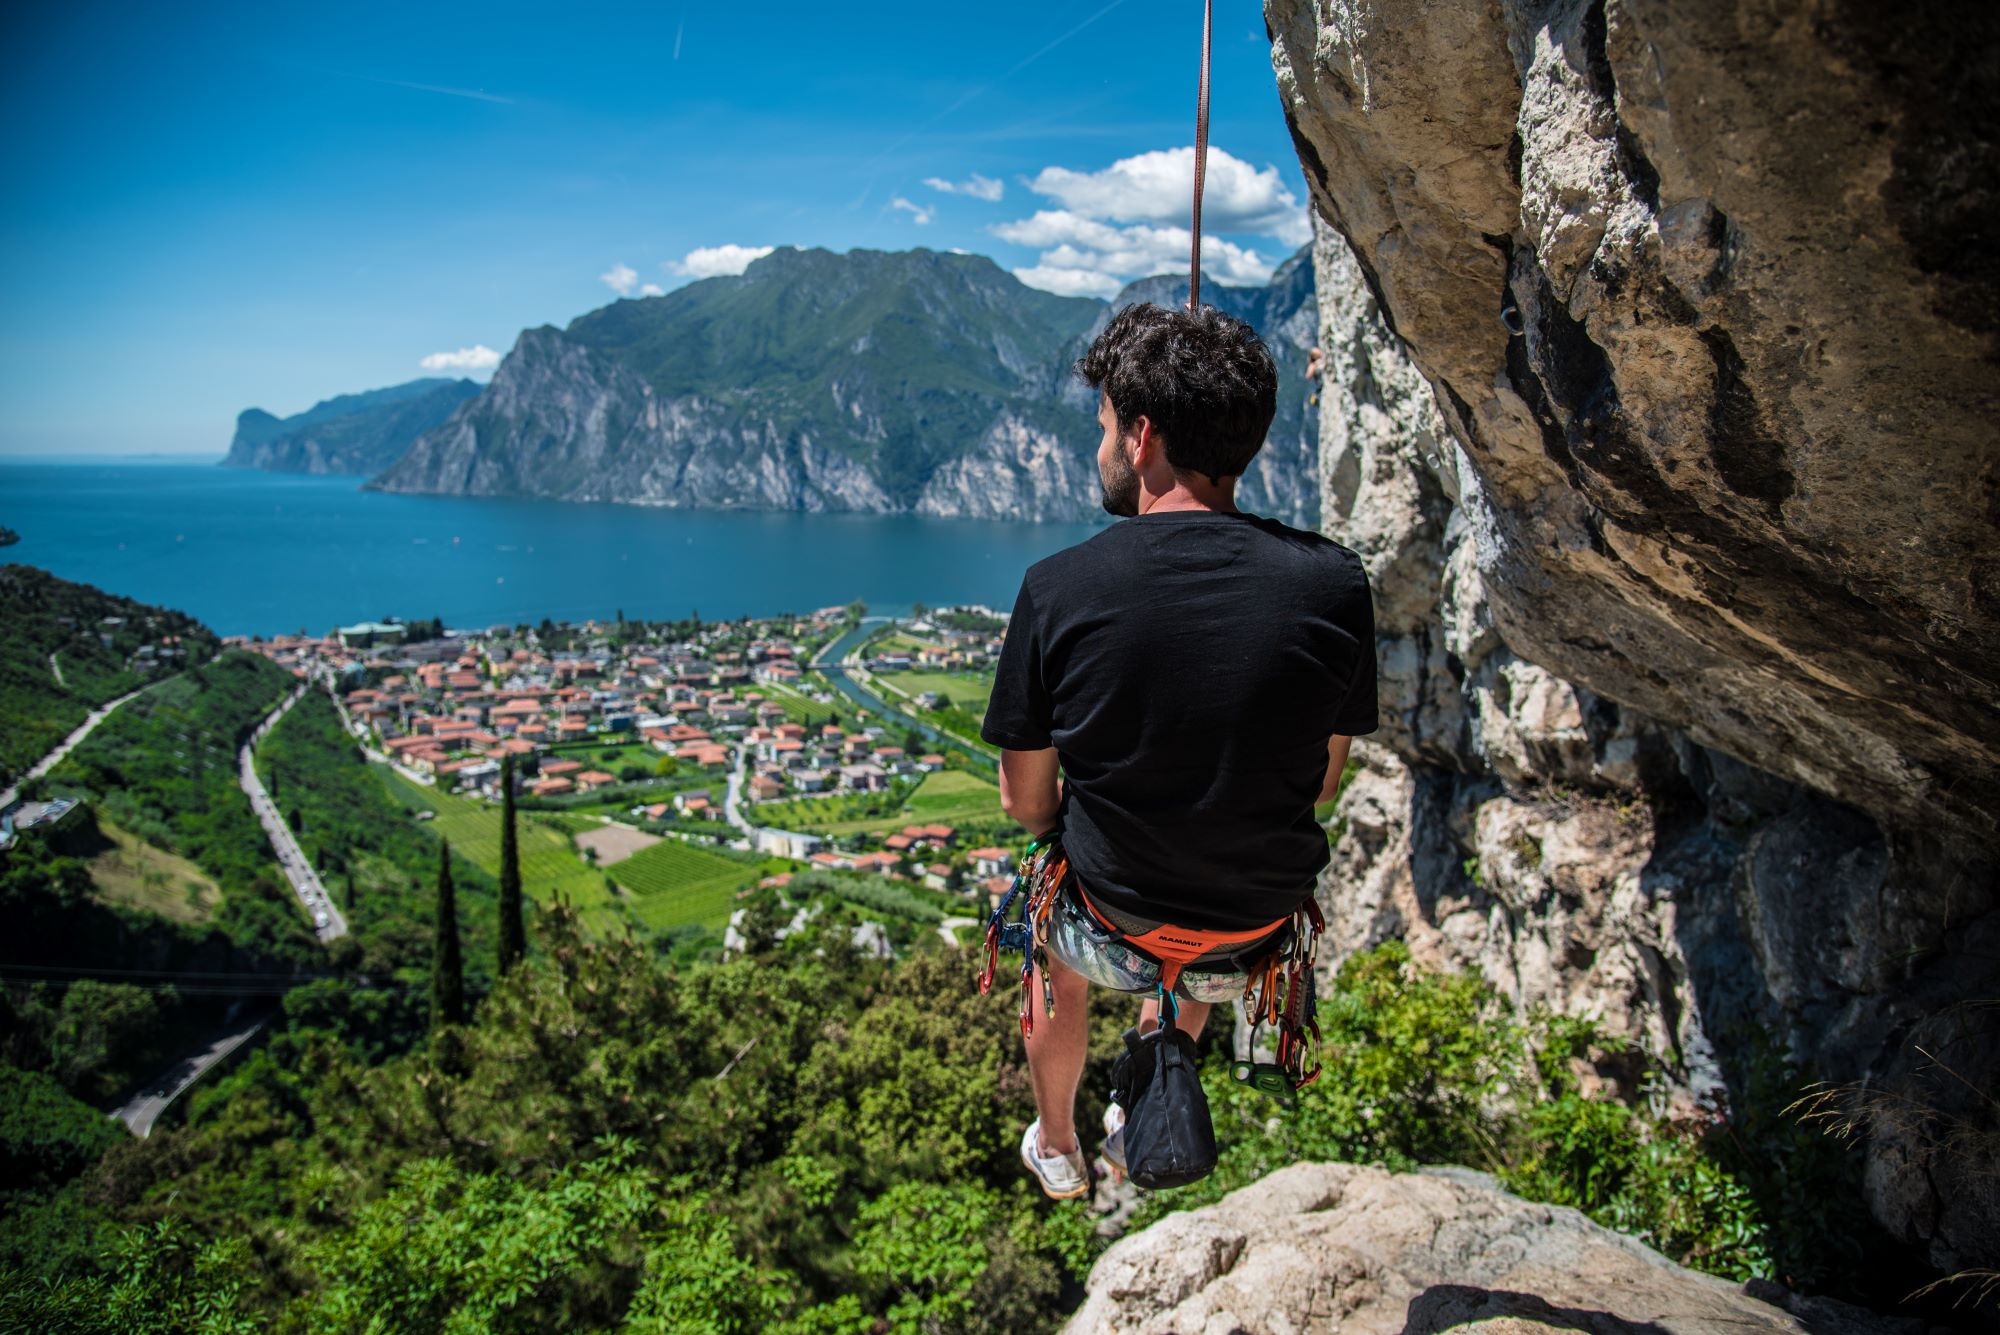 Il posto ideale per trascorrere le tue vacanze al Lago di Garda. Posizione idea per appassionati di surf, vela, mountain bike o arrampicata!